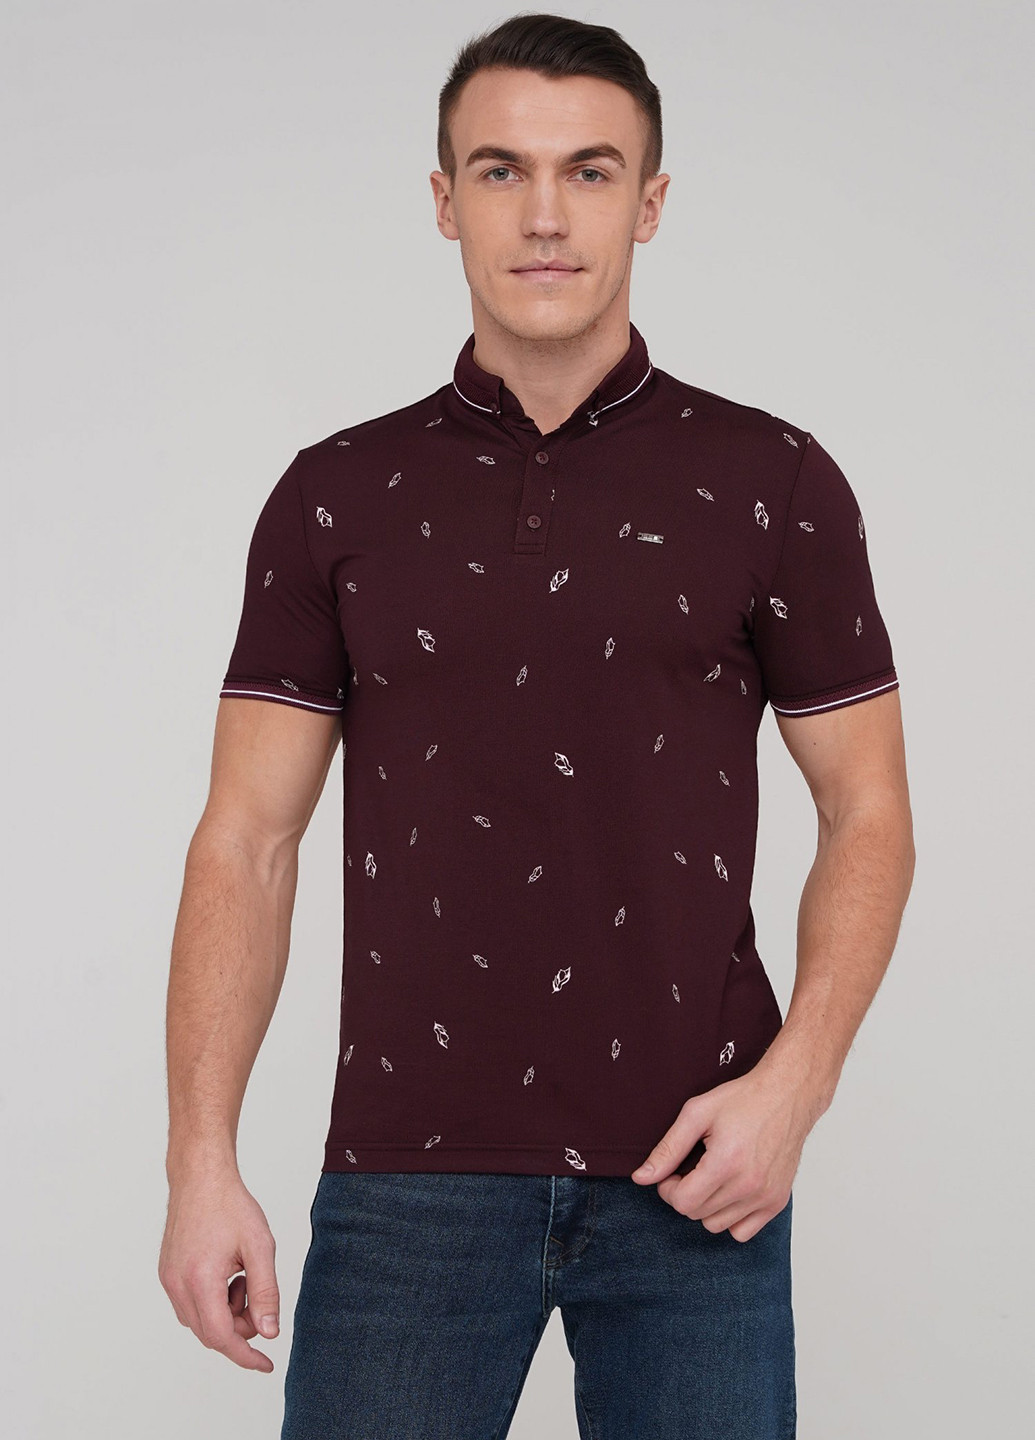 Темно-бордовая футболка-поло для мужчин Trend Collection с рисунком